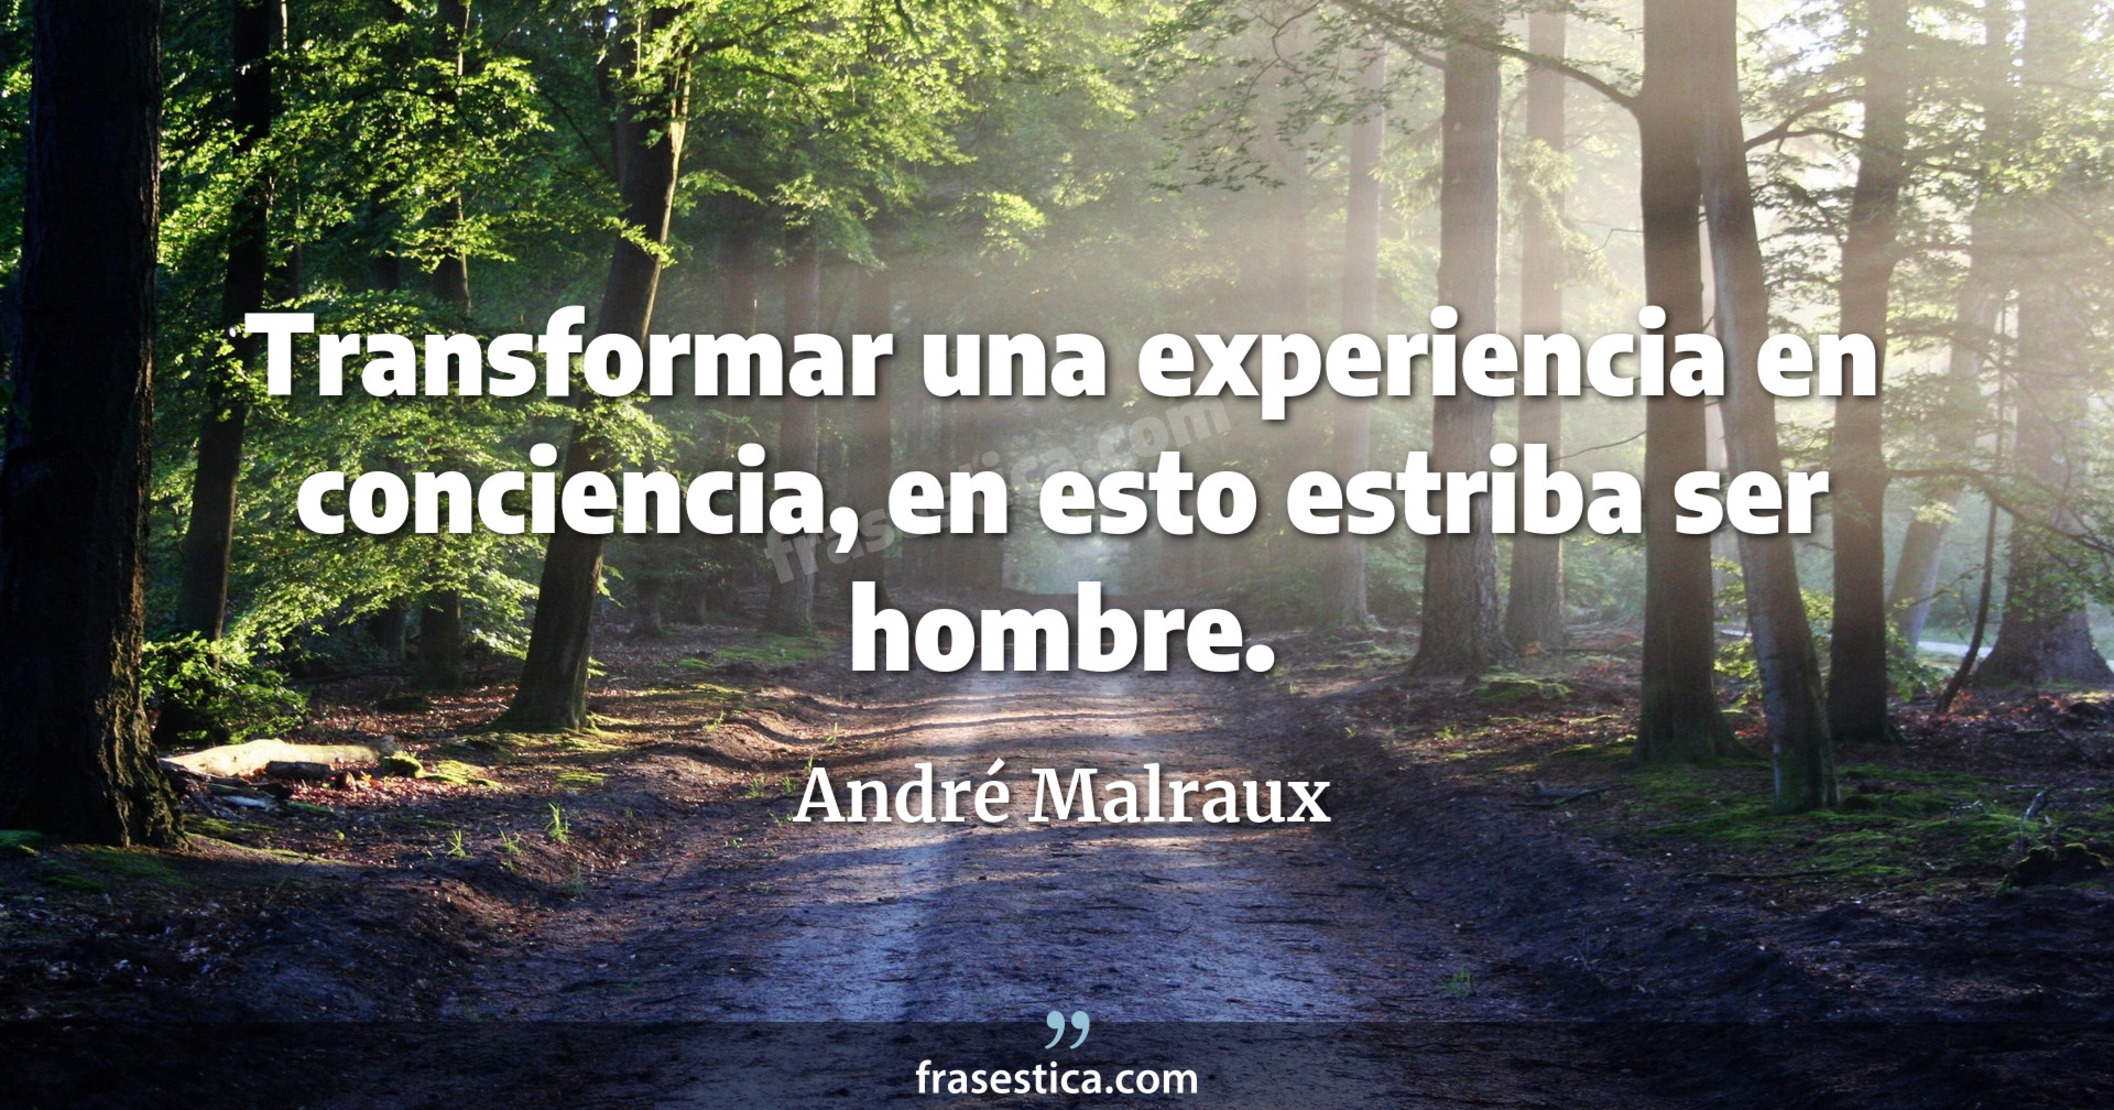 Transformar una experiencia en conciencia, en esto estriba ser hombre. - André Malraux